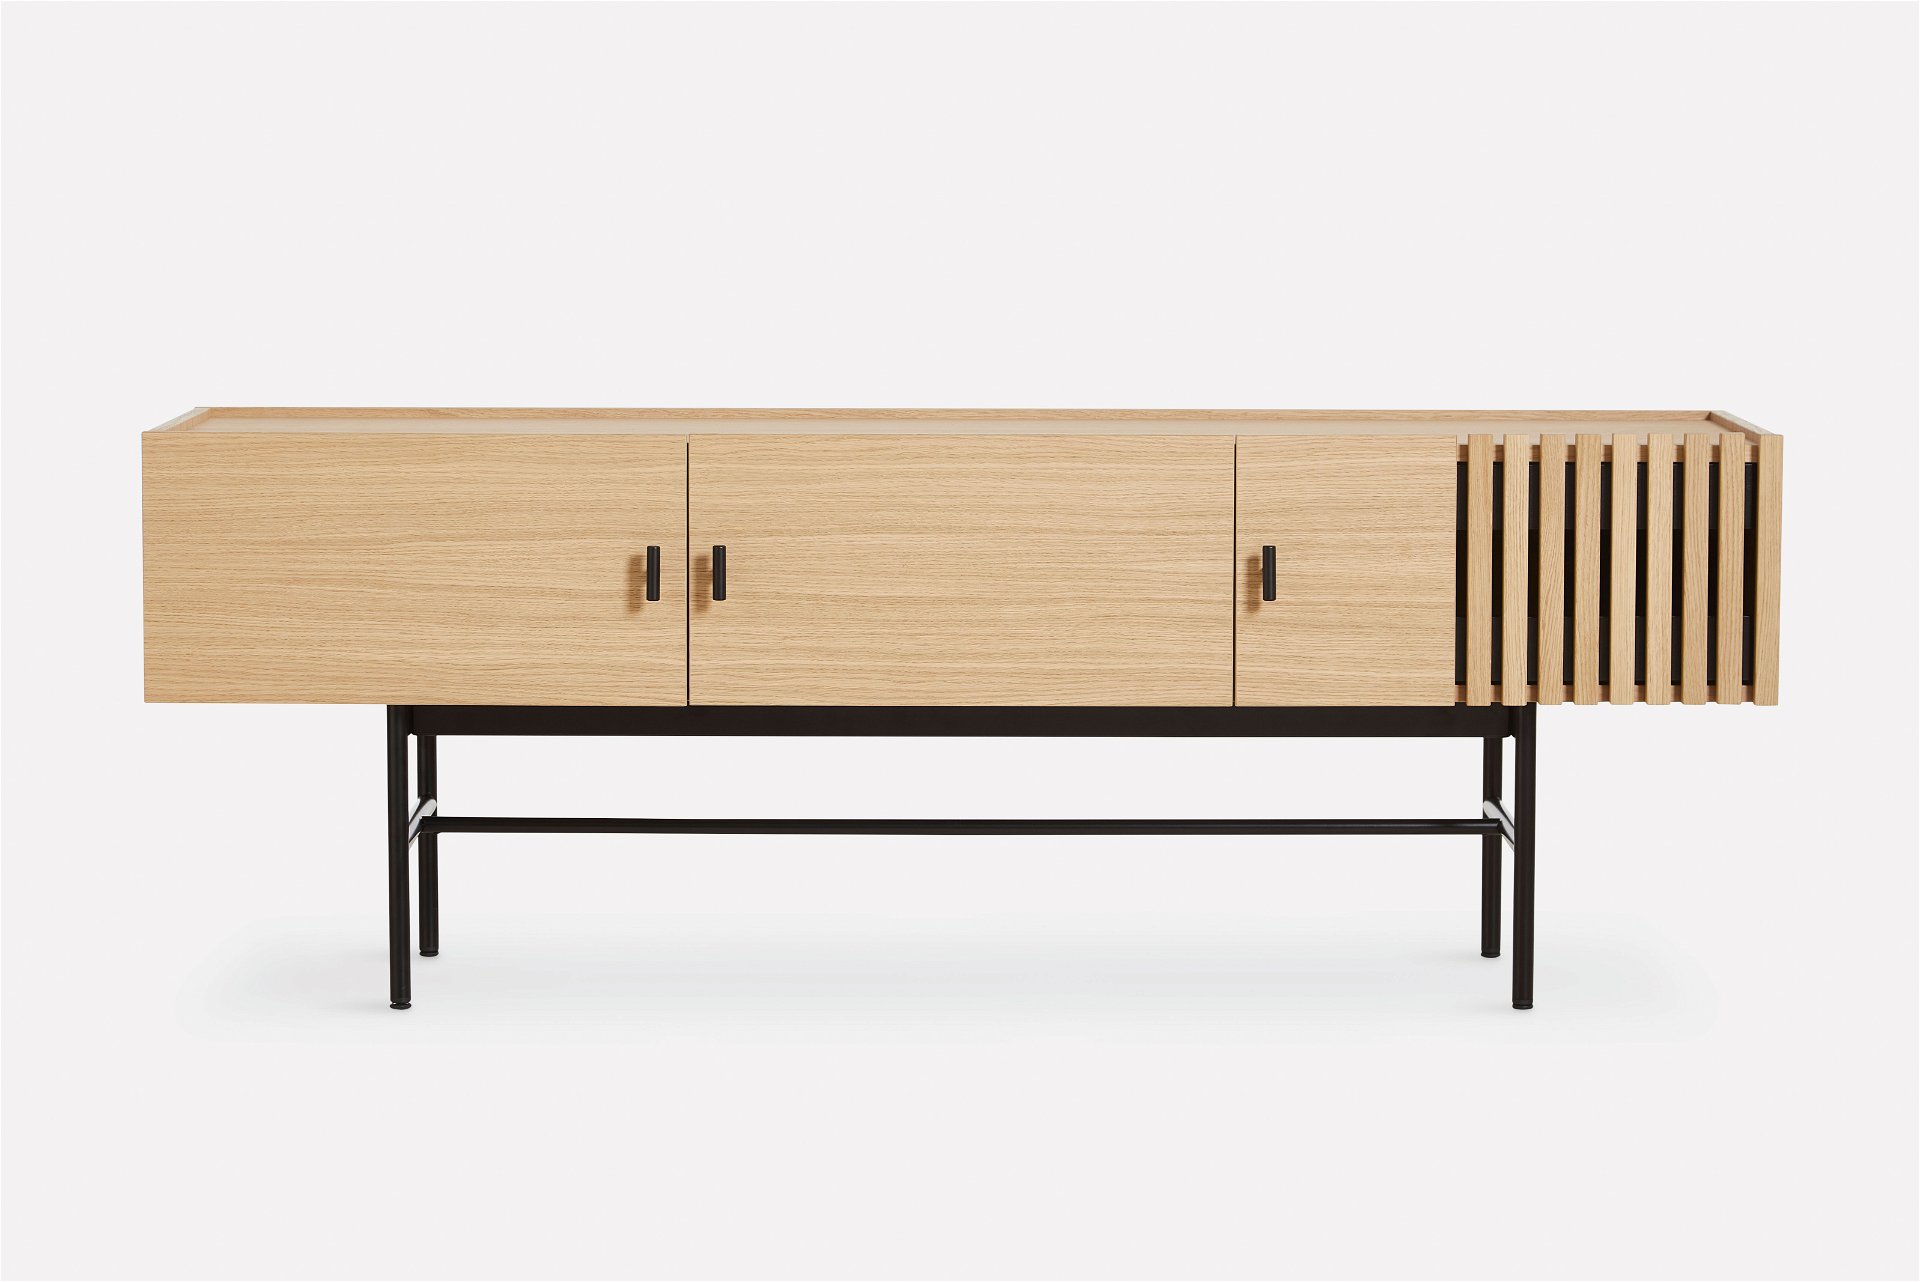 Gut zitiert: Die Verkleidung des Sideboards »Array« für Woud ist von der Holzschieferverkleidung moderner Architektur inspiriert.